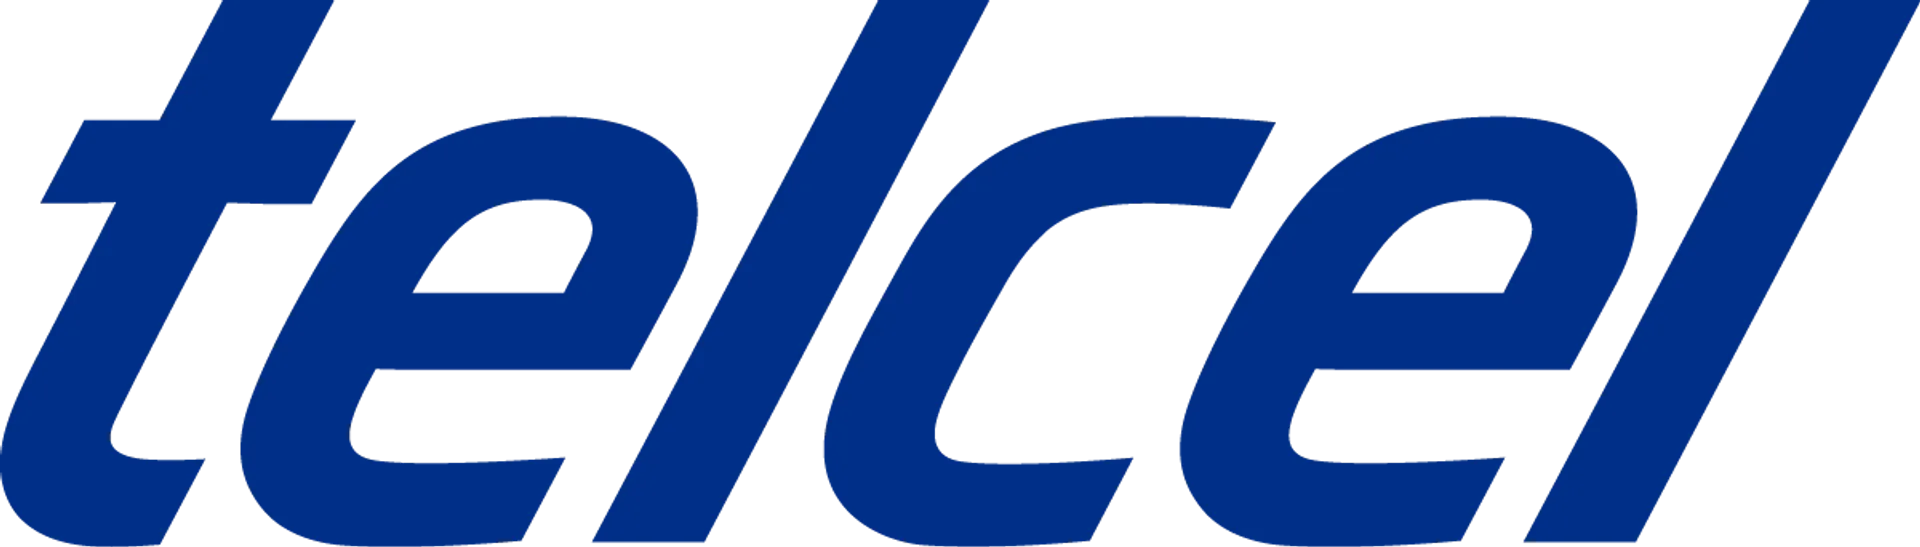 TELCEL logo